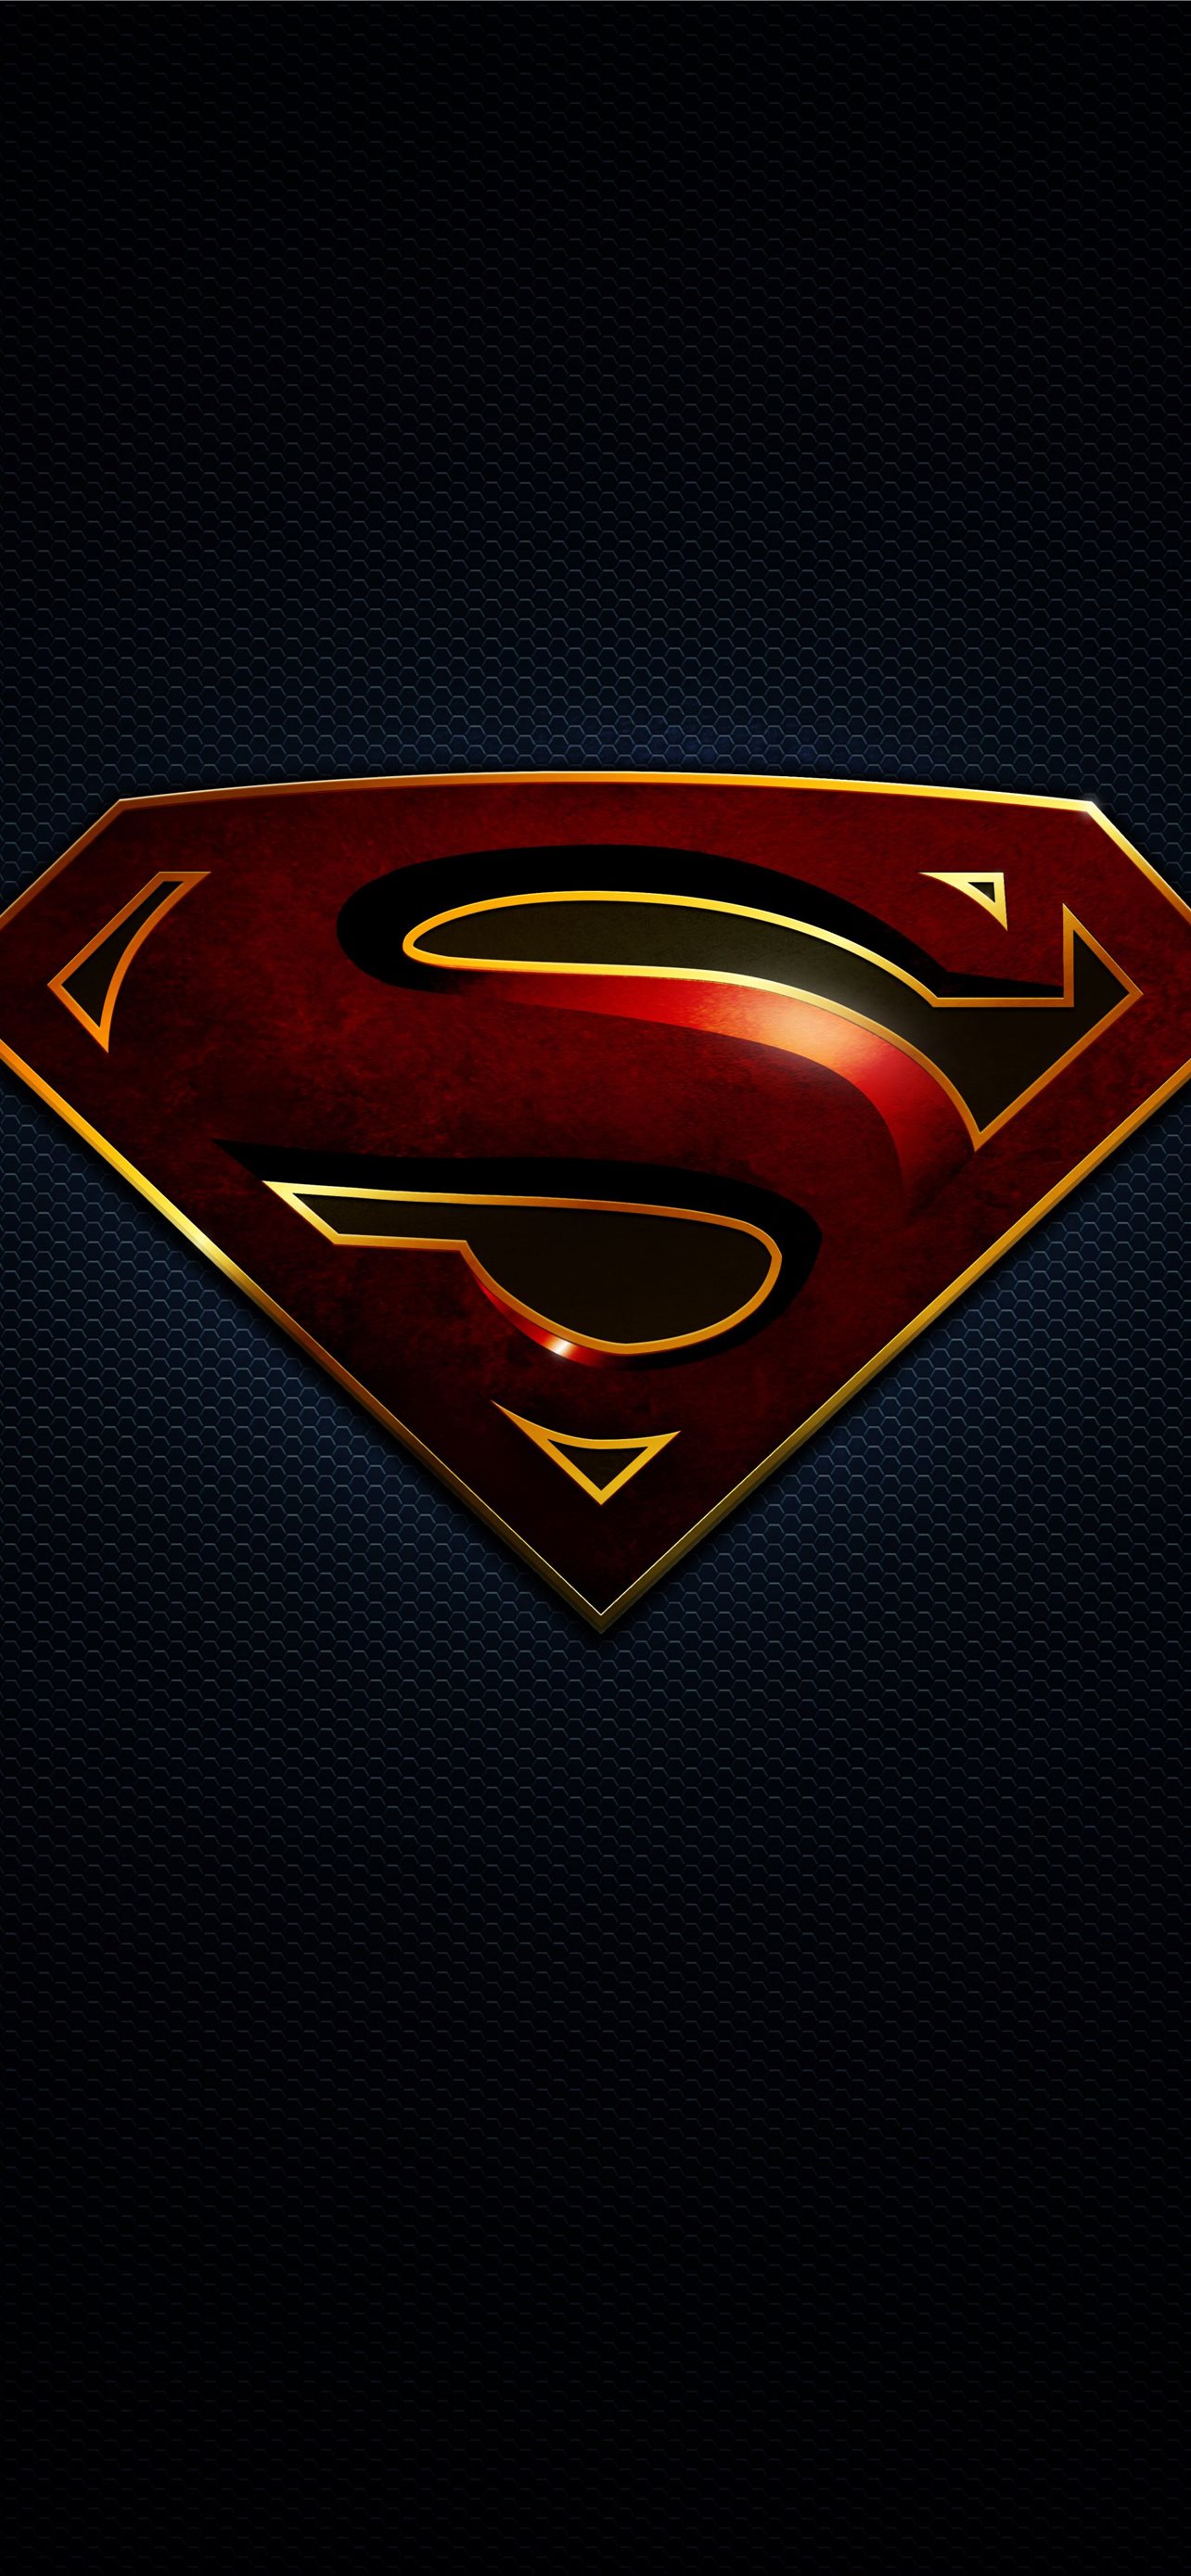 Justice league superman black suit iPhone 12  Superman Phone HD phone  wallpaper  Pxfuel